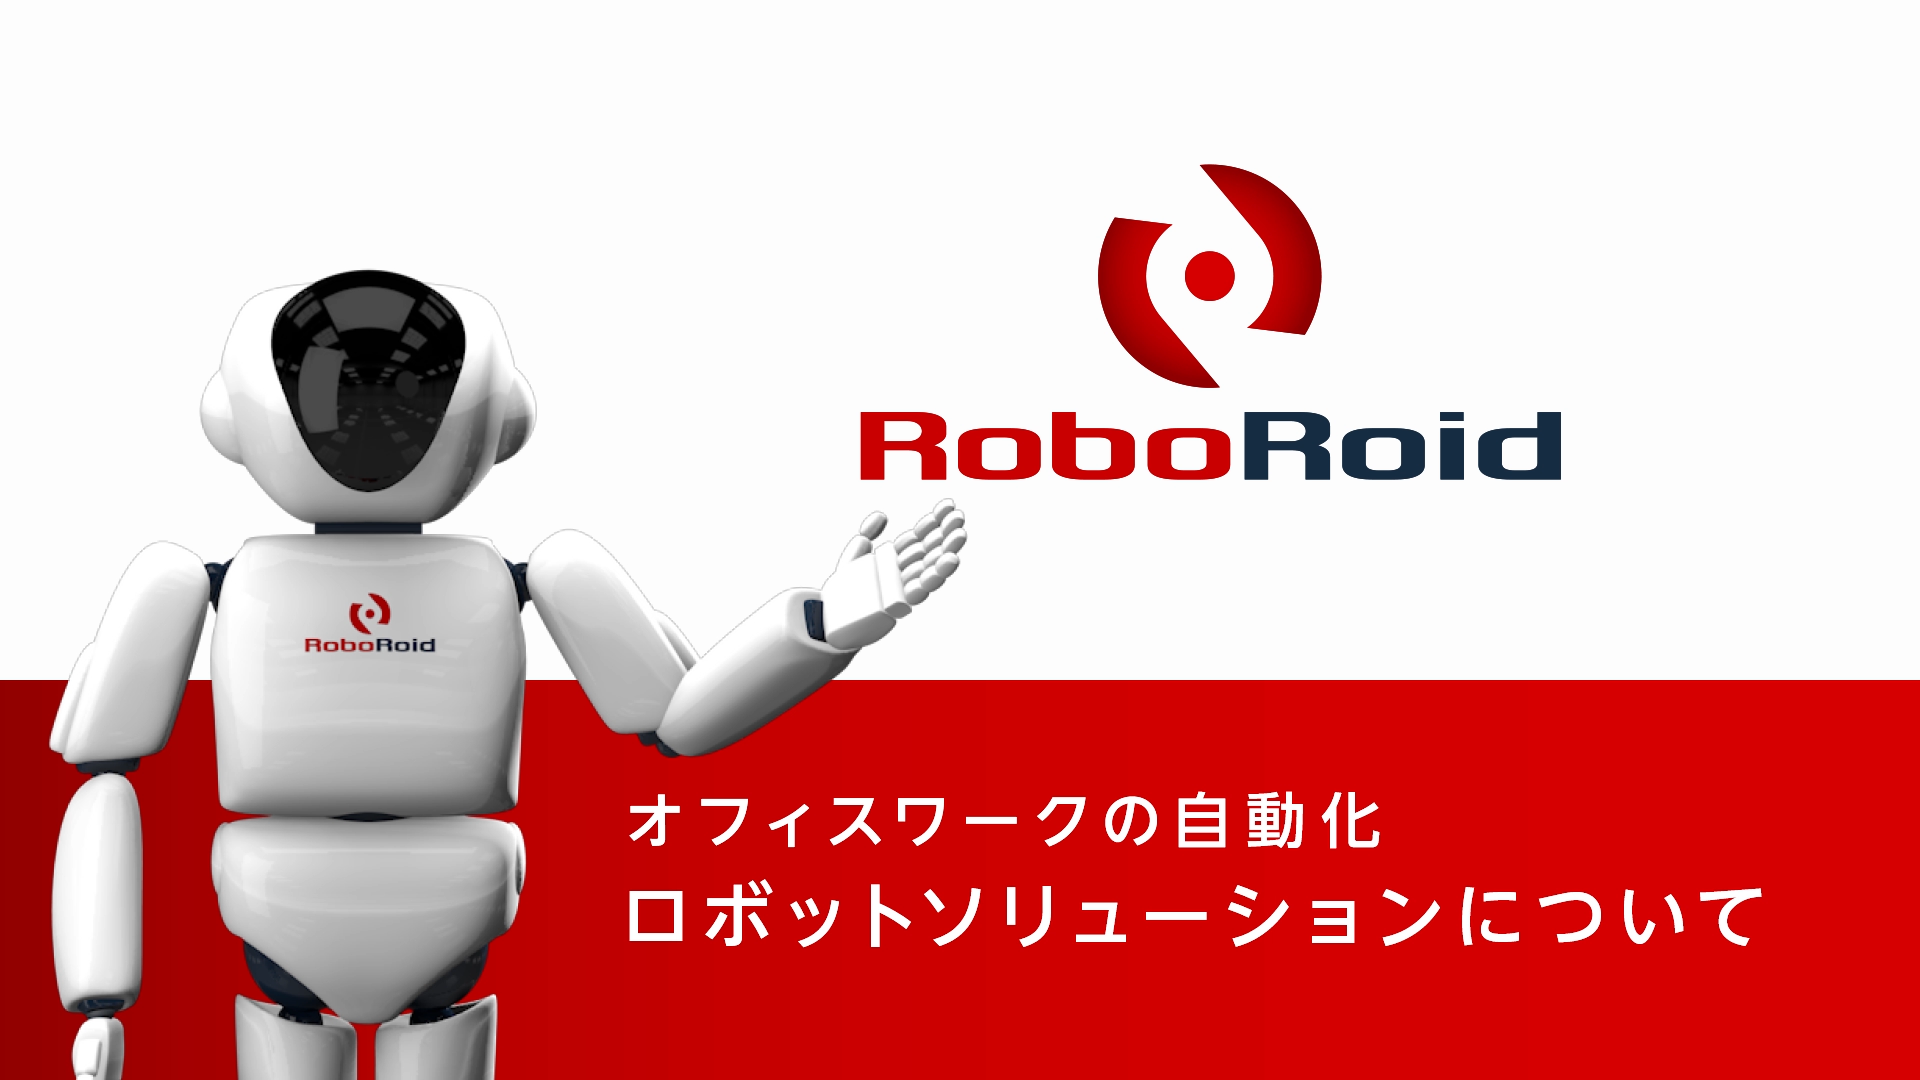 RoboRoid